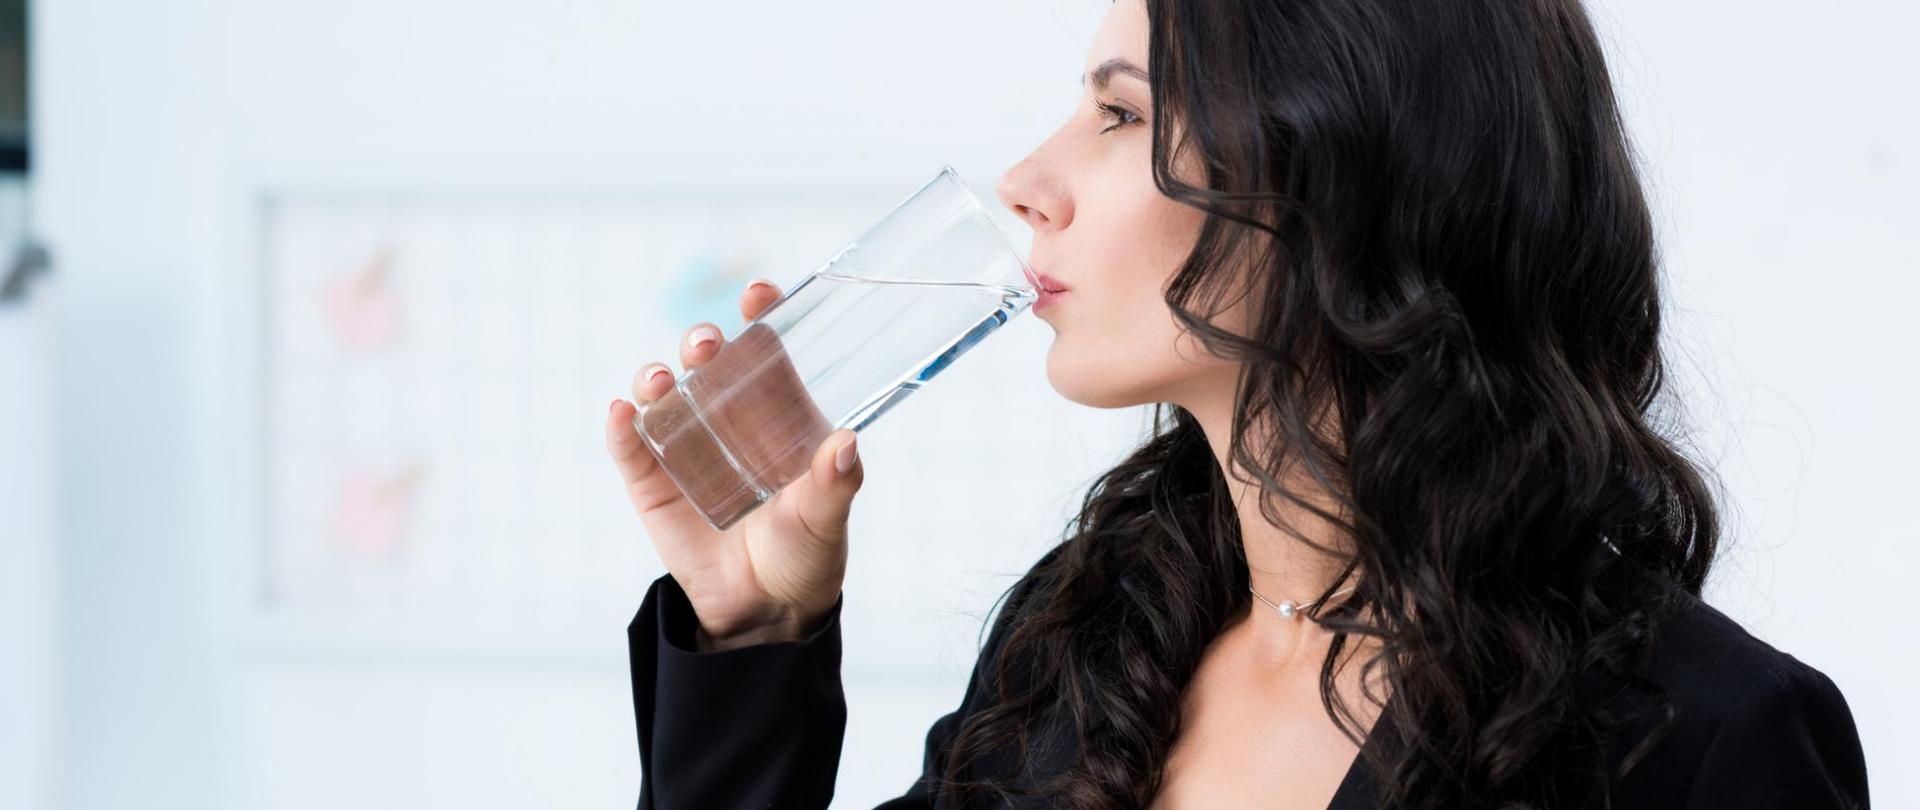 Na zdjęciu jest kobieta pijąca wodę ze szklanki.